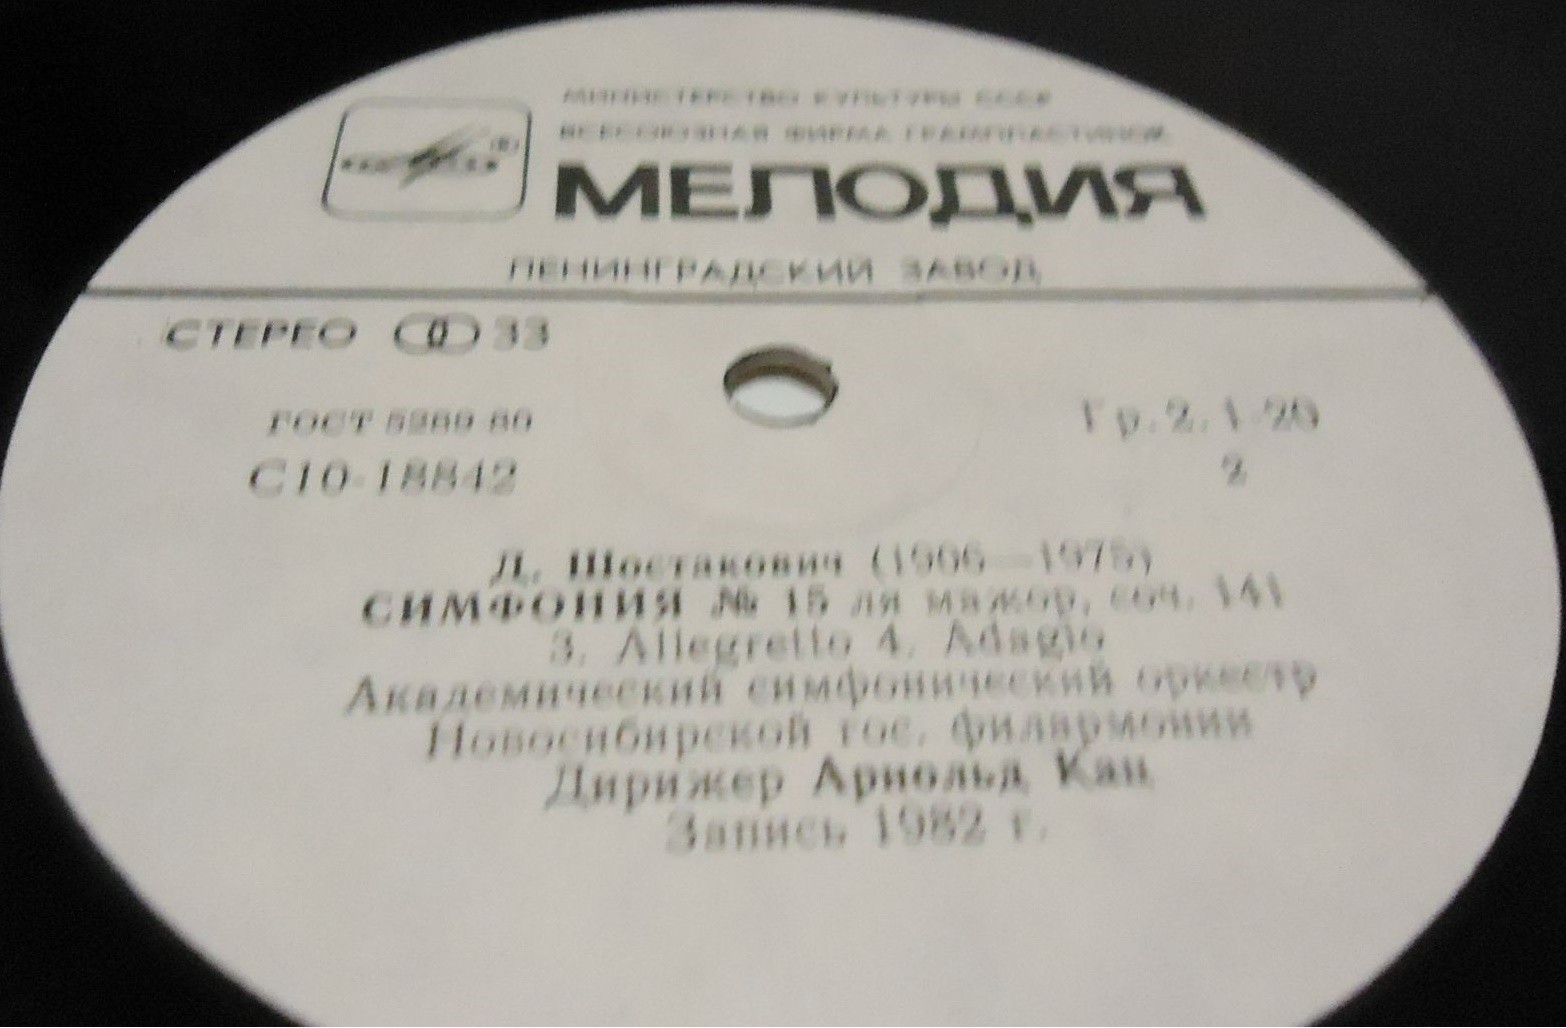 Д. ШОСТАКОВИЧ (1906-1975): Симфония № 15 ля мажор, соч. 141